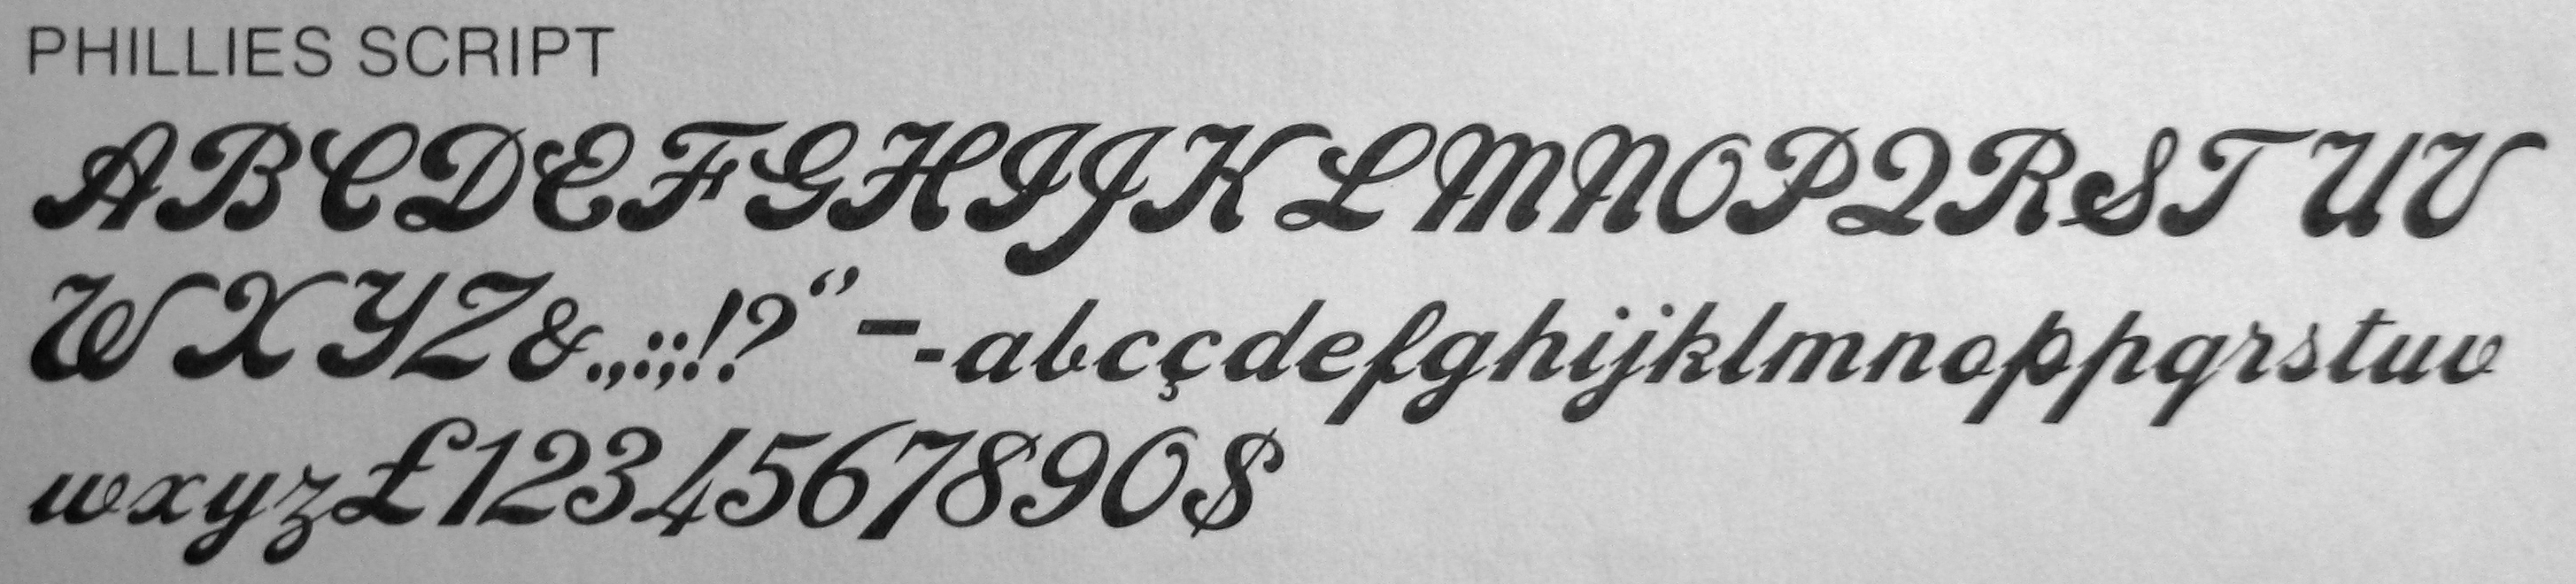 phillies cursive font